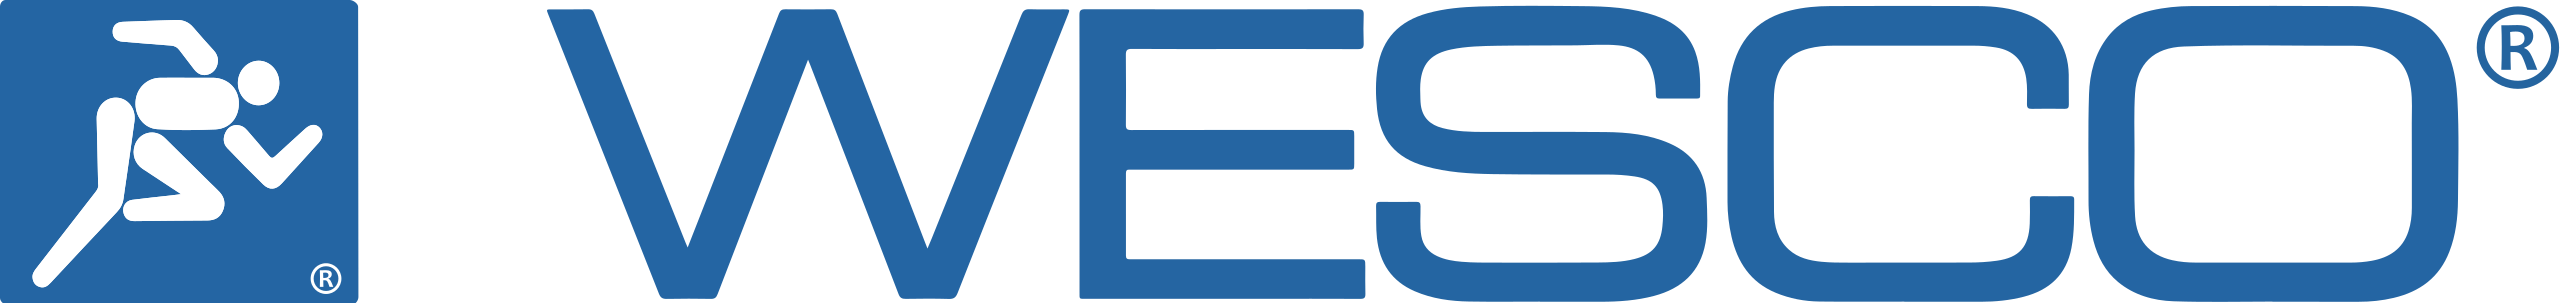 Wesco_International_logo.svg